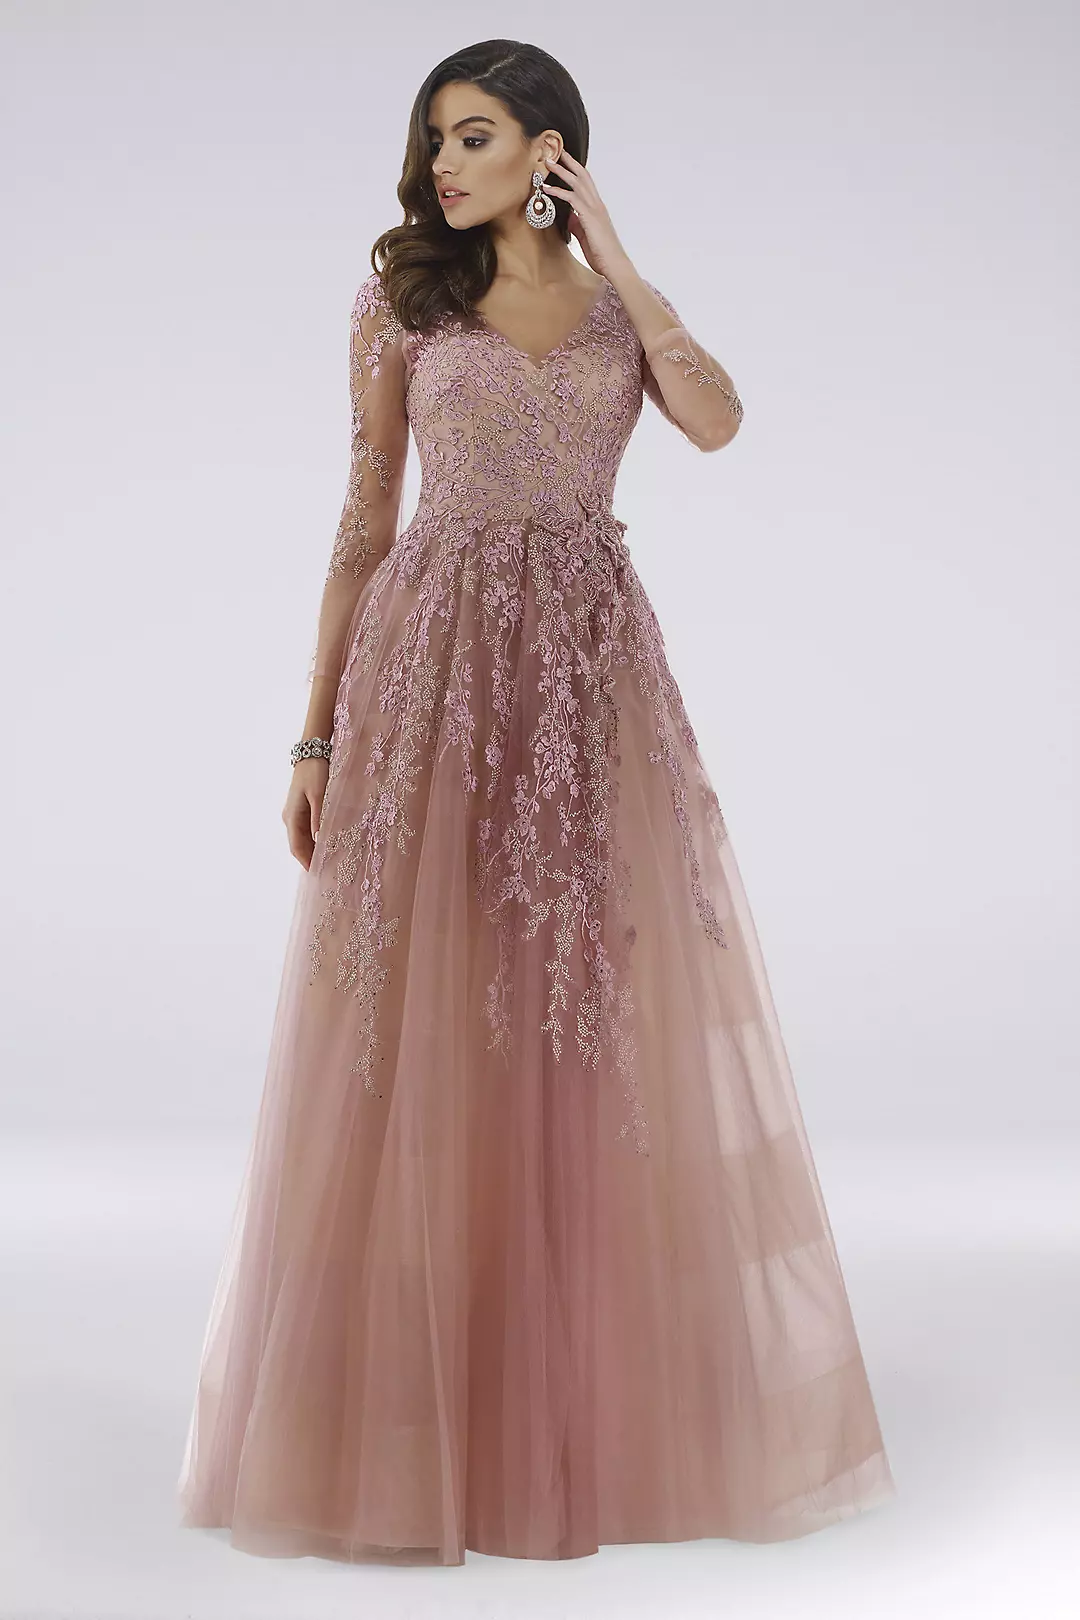 Lara Davi Floral Applique Lace Ball Gown Image